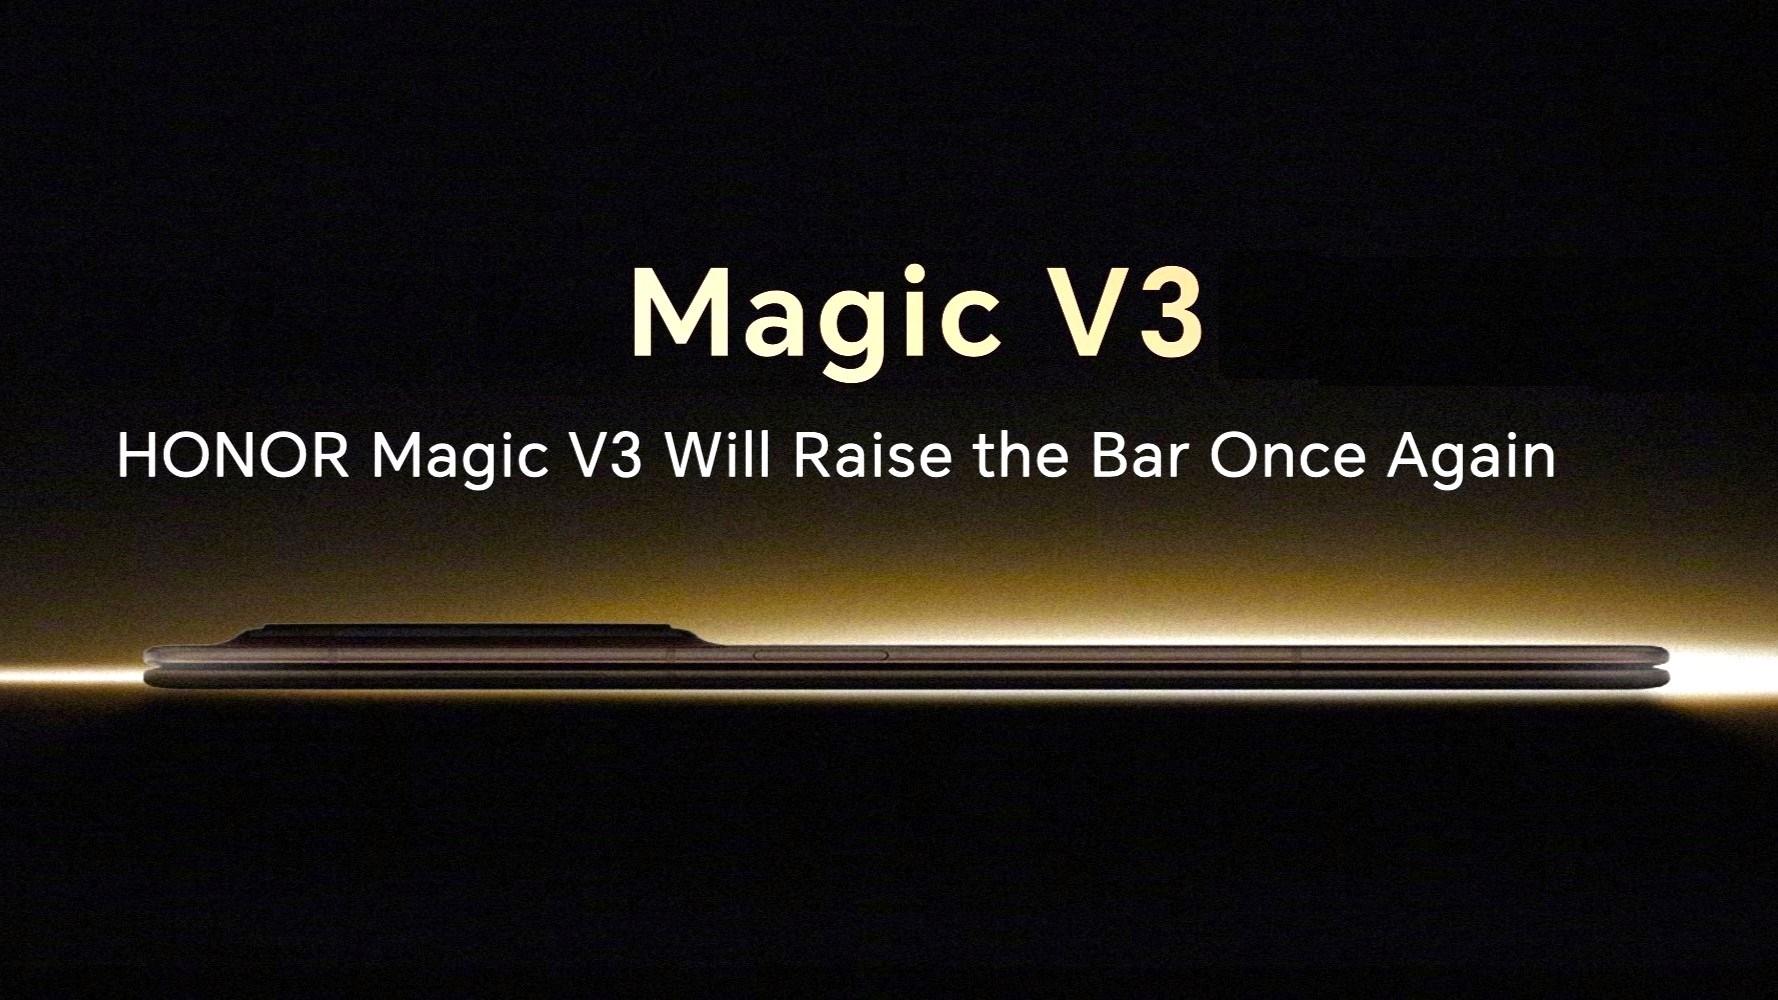 Honor Magic V3, inceliği başka bir seviyeye taşıyacak